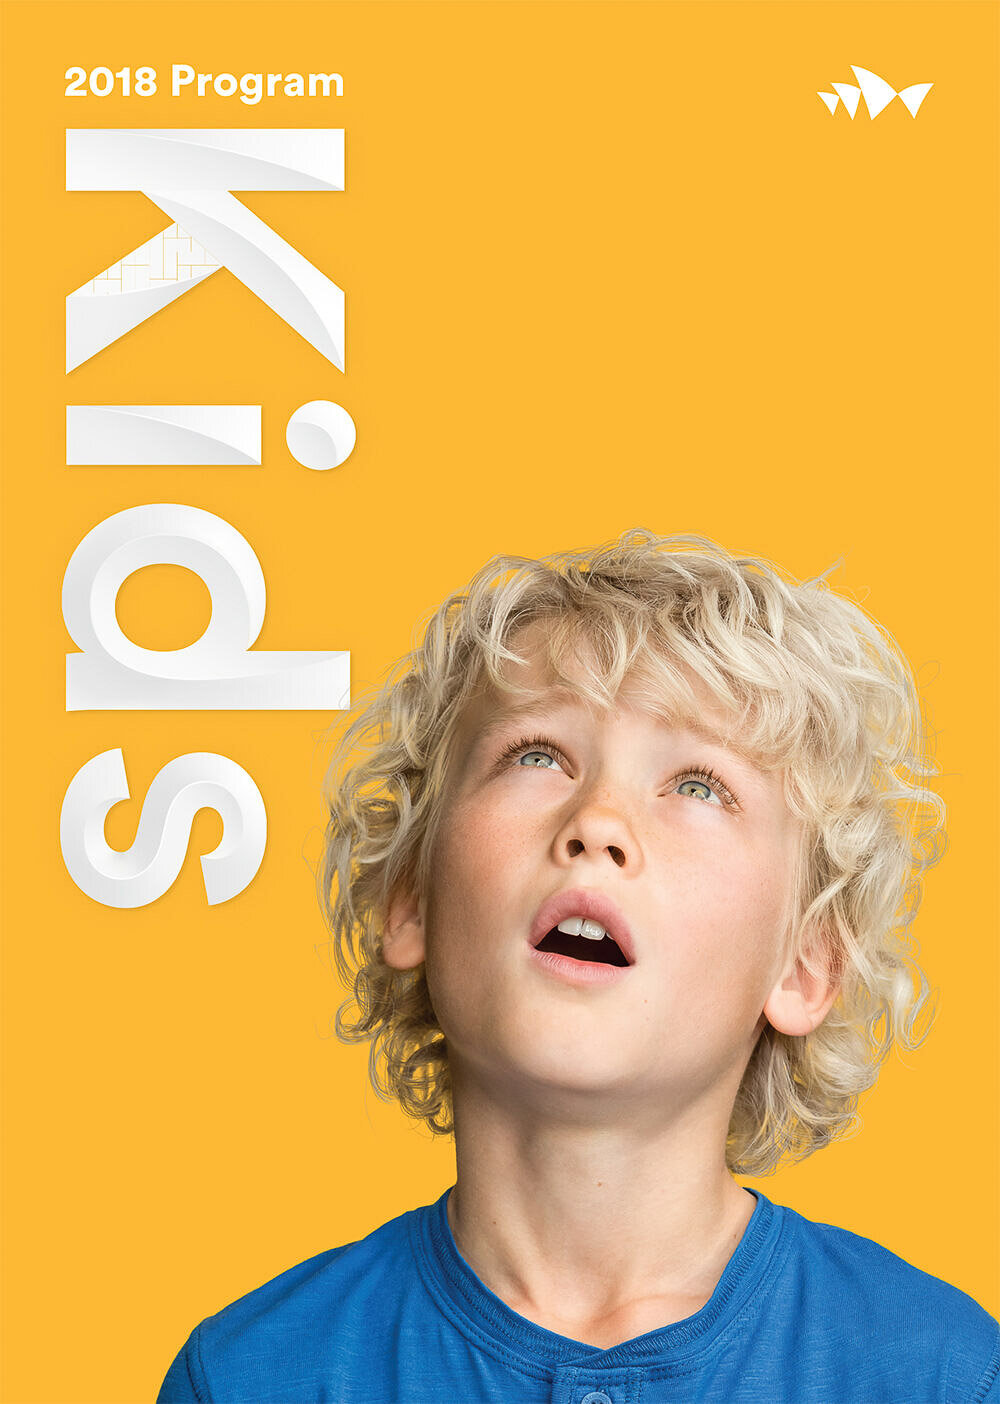 Sydney Opera House Kids Brand Campaign